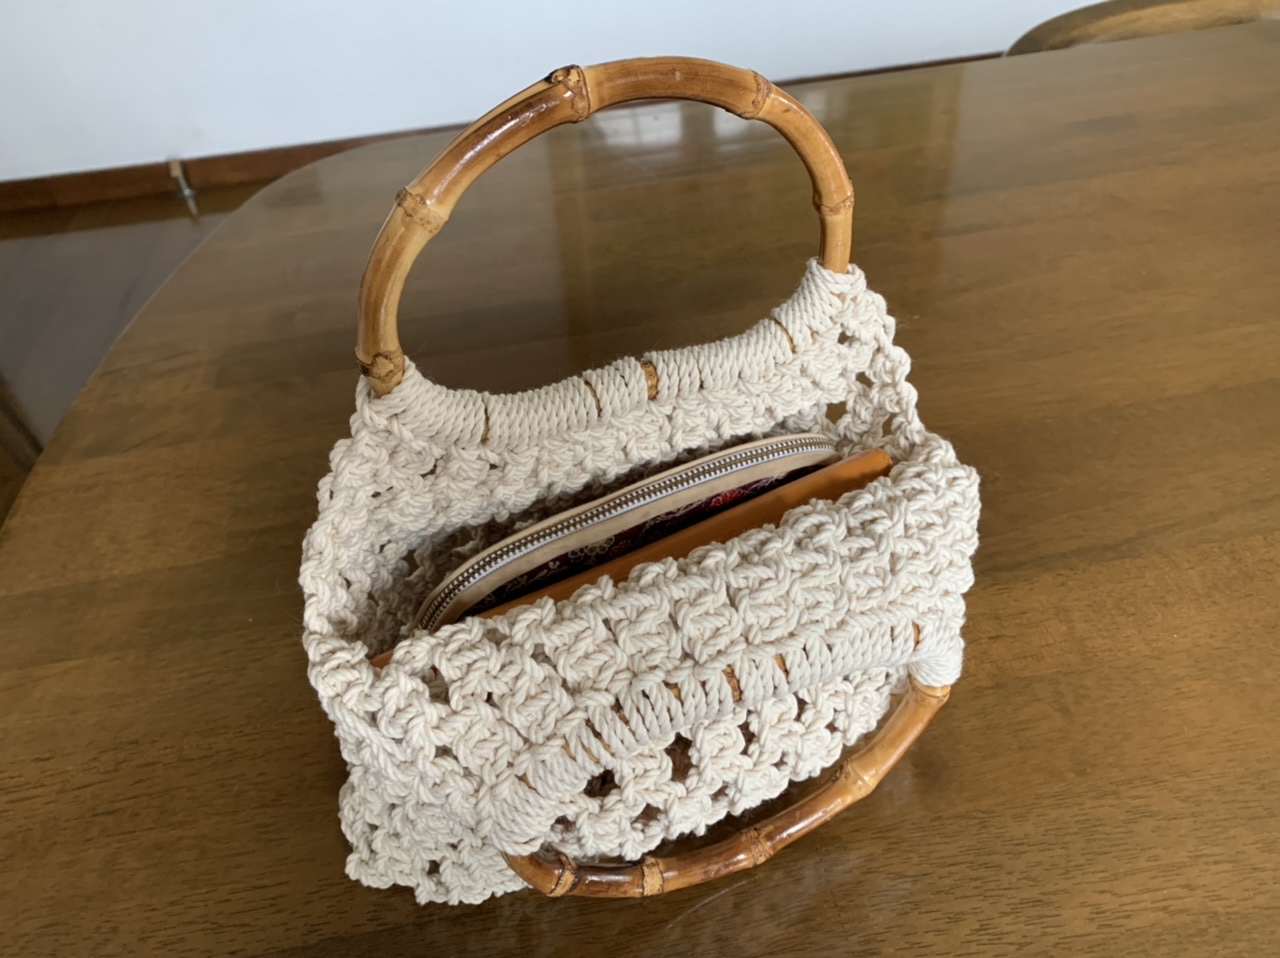 かまぼこ型の竹持ち手とコットン生成り糸のマクラメバッグ Iichi ハンドメイド クラフト作品 手仕事品の通販